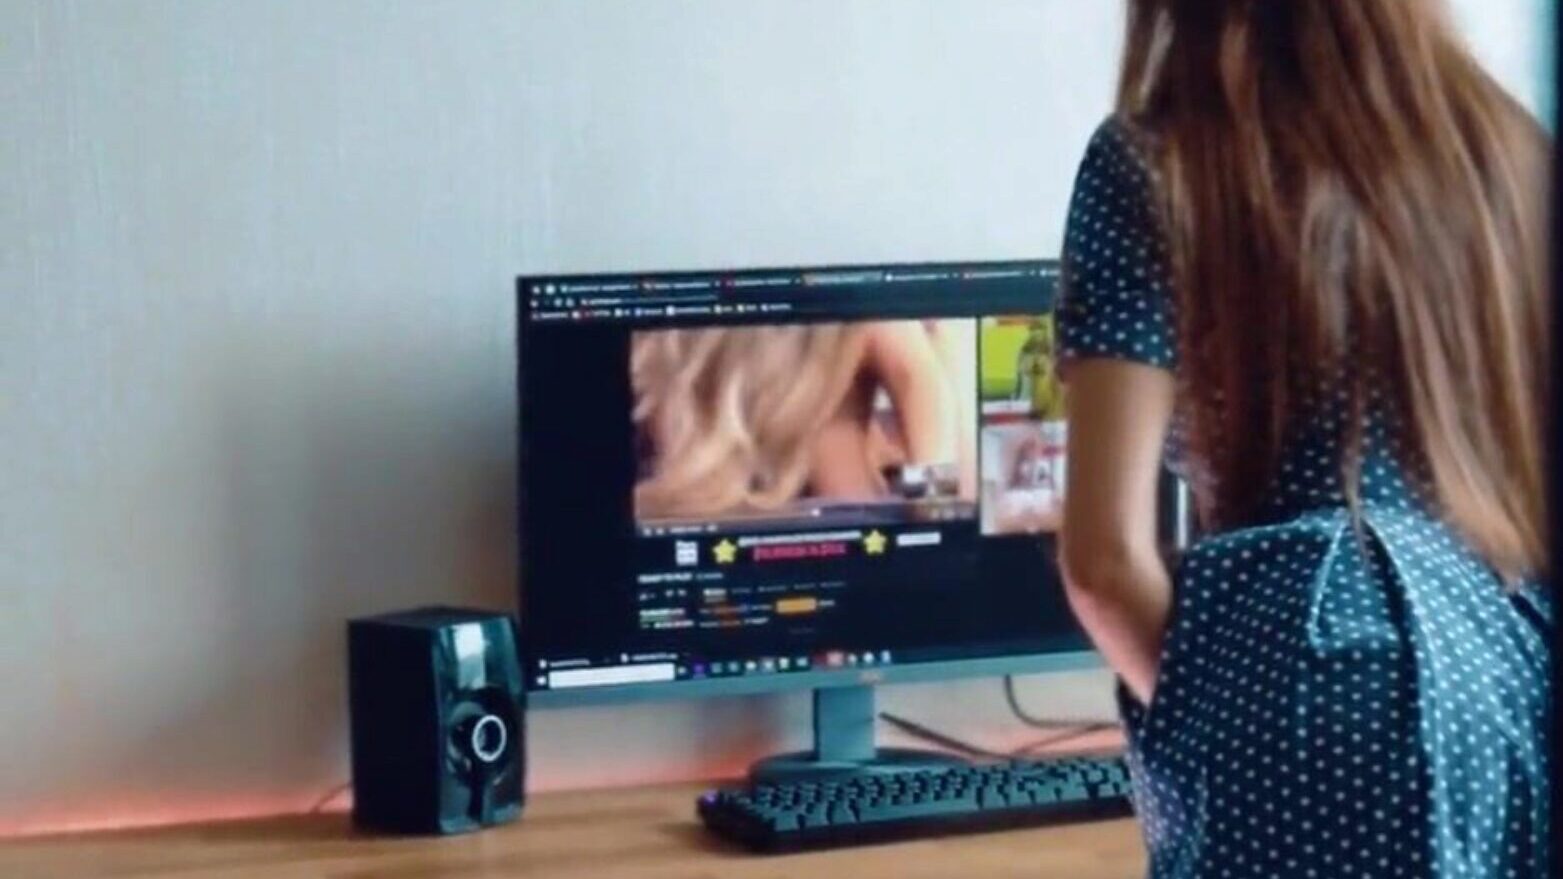 kız öğrenci porno izlerken yakalandı porno yüzünde yük alır kız öğrenci izlerken porno yüzünde yük alır